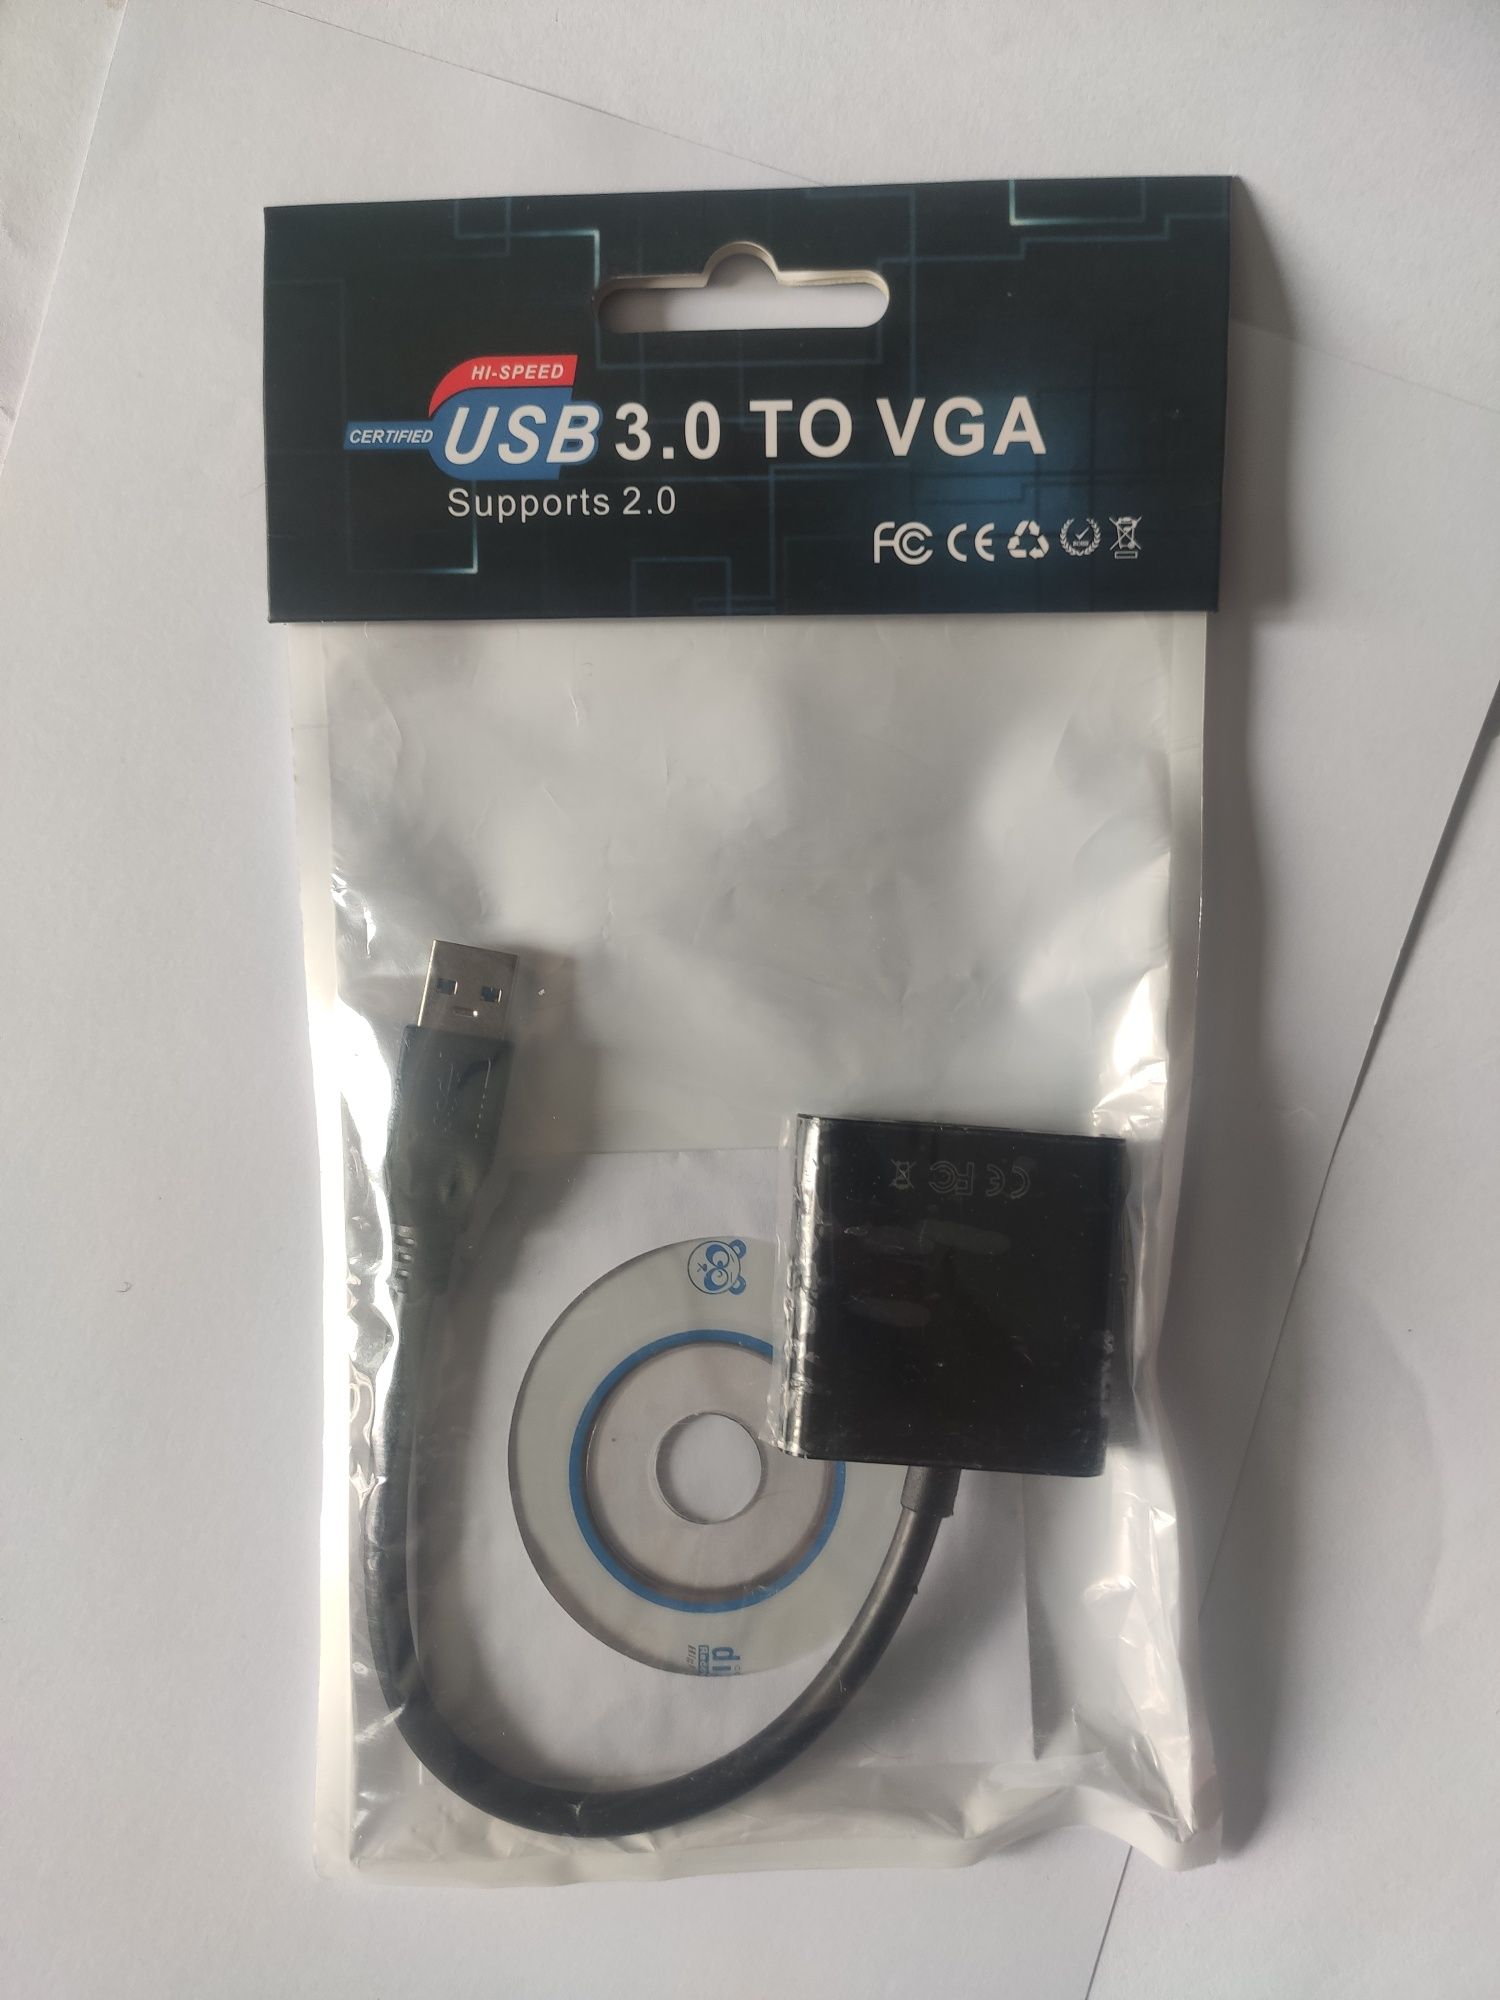 Розширь можливості ноутбука: USB to VGA адаптер для Full HD якості та